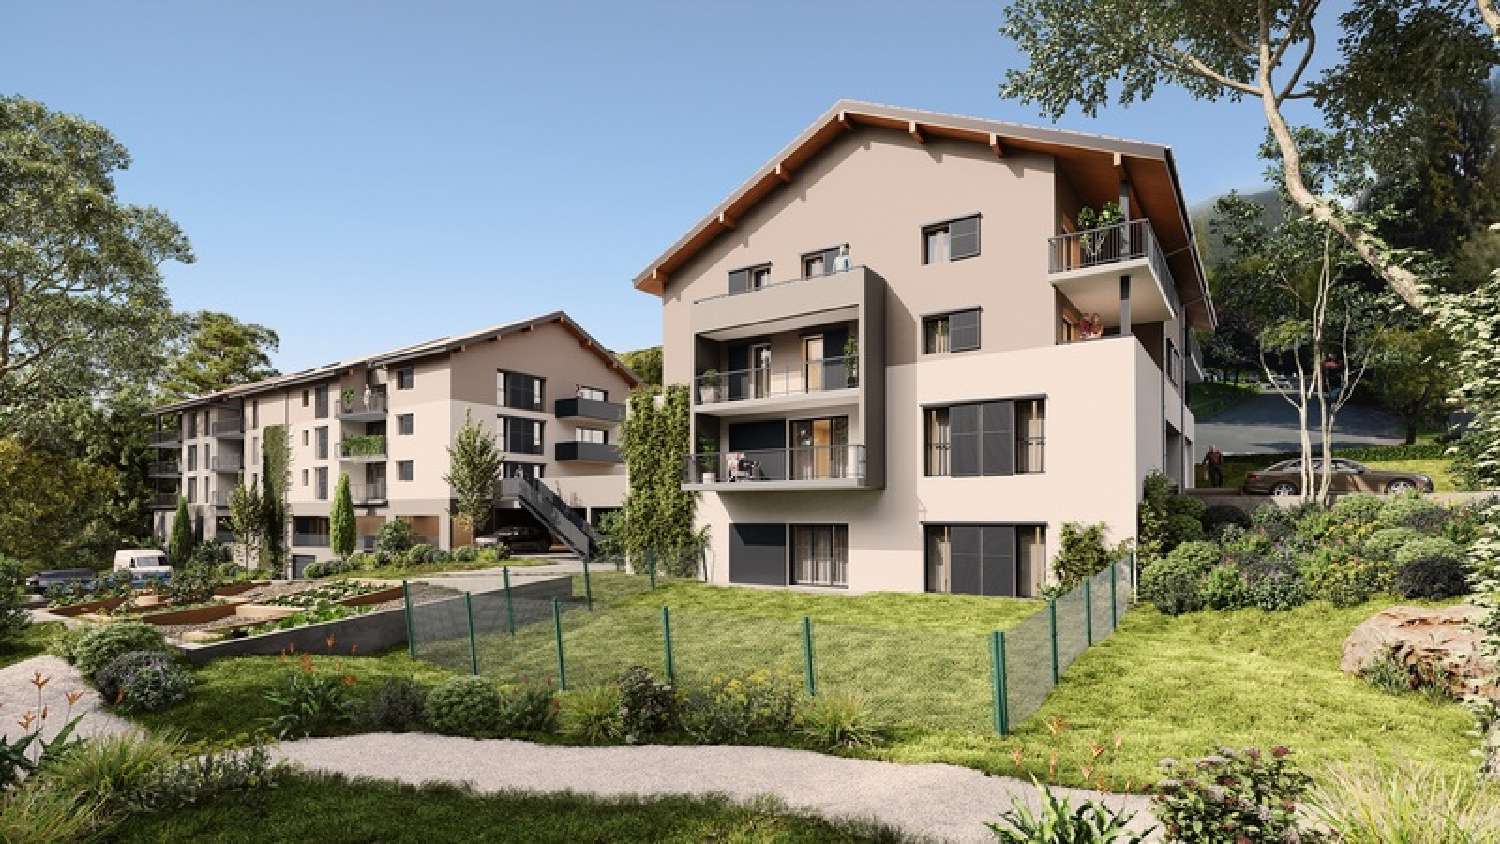  à vendre appartement Villaz Haute-Savoie 1